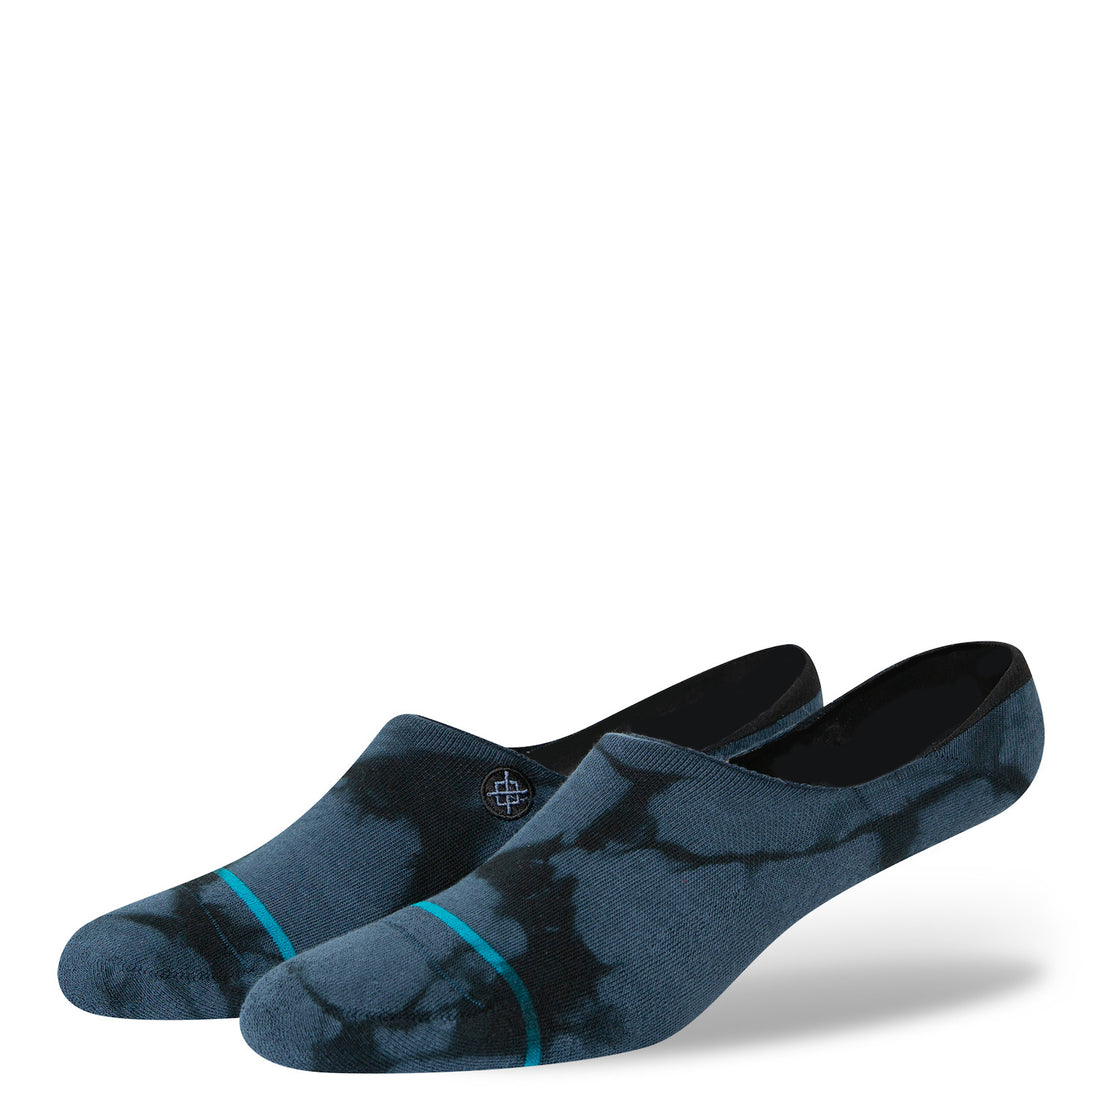 Stance "Turbid" Socks (Blue)